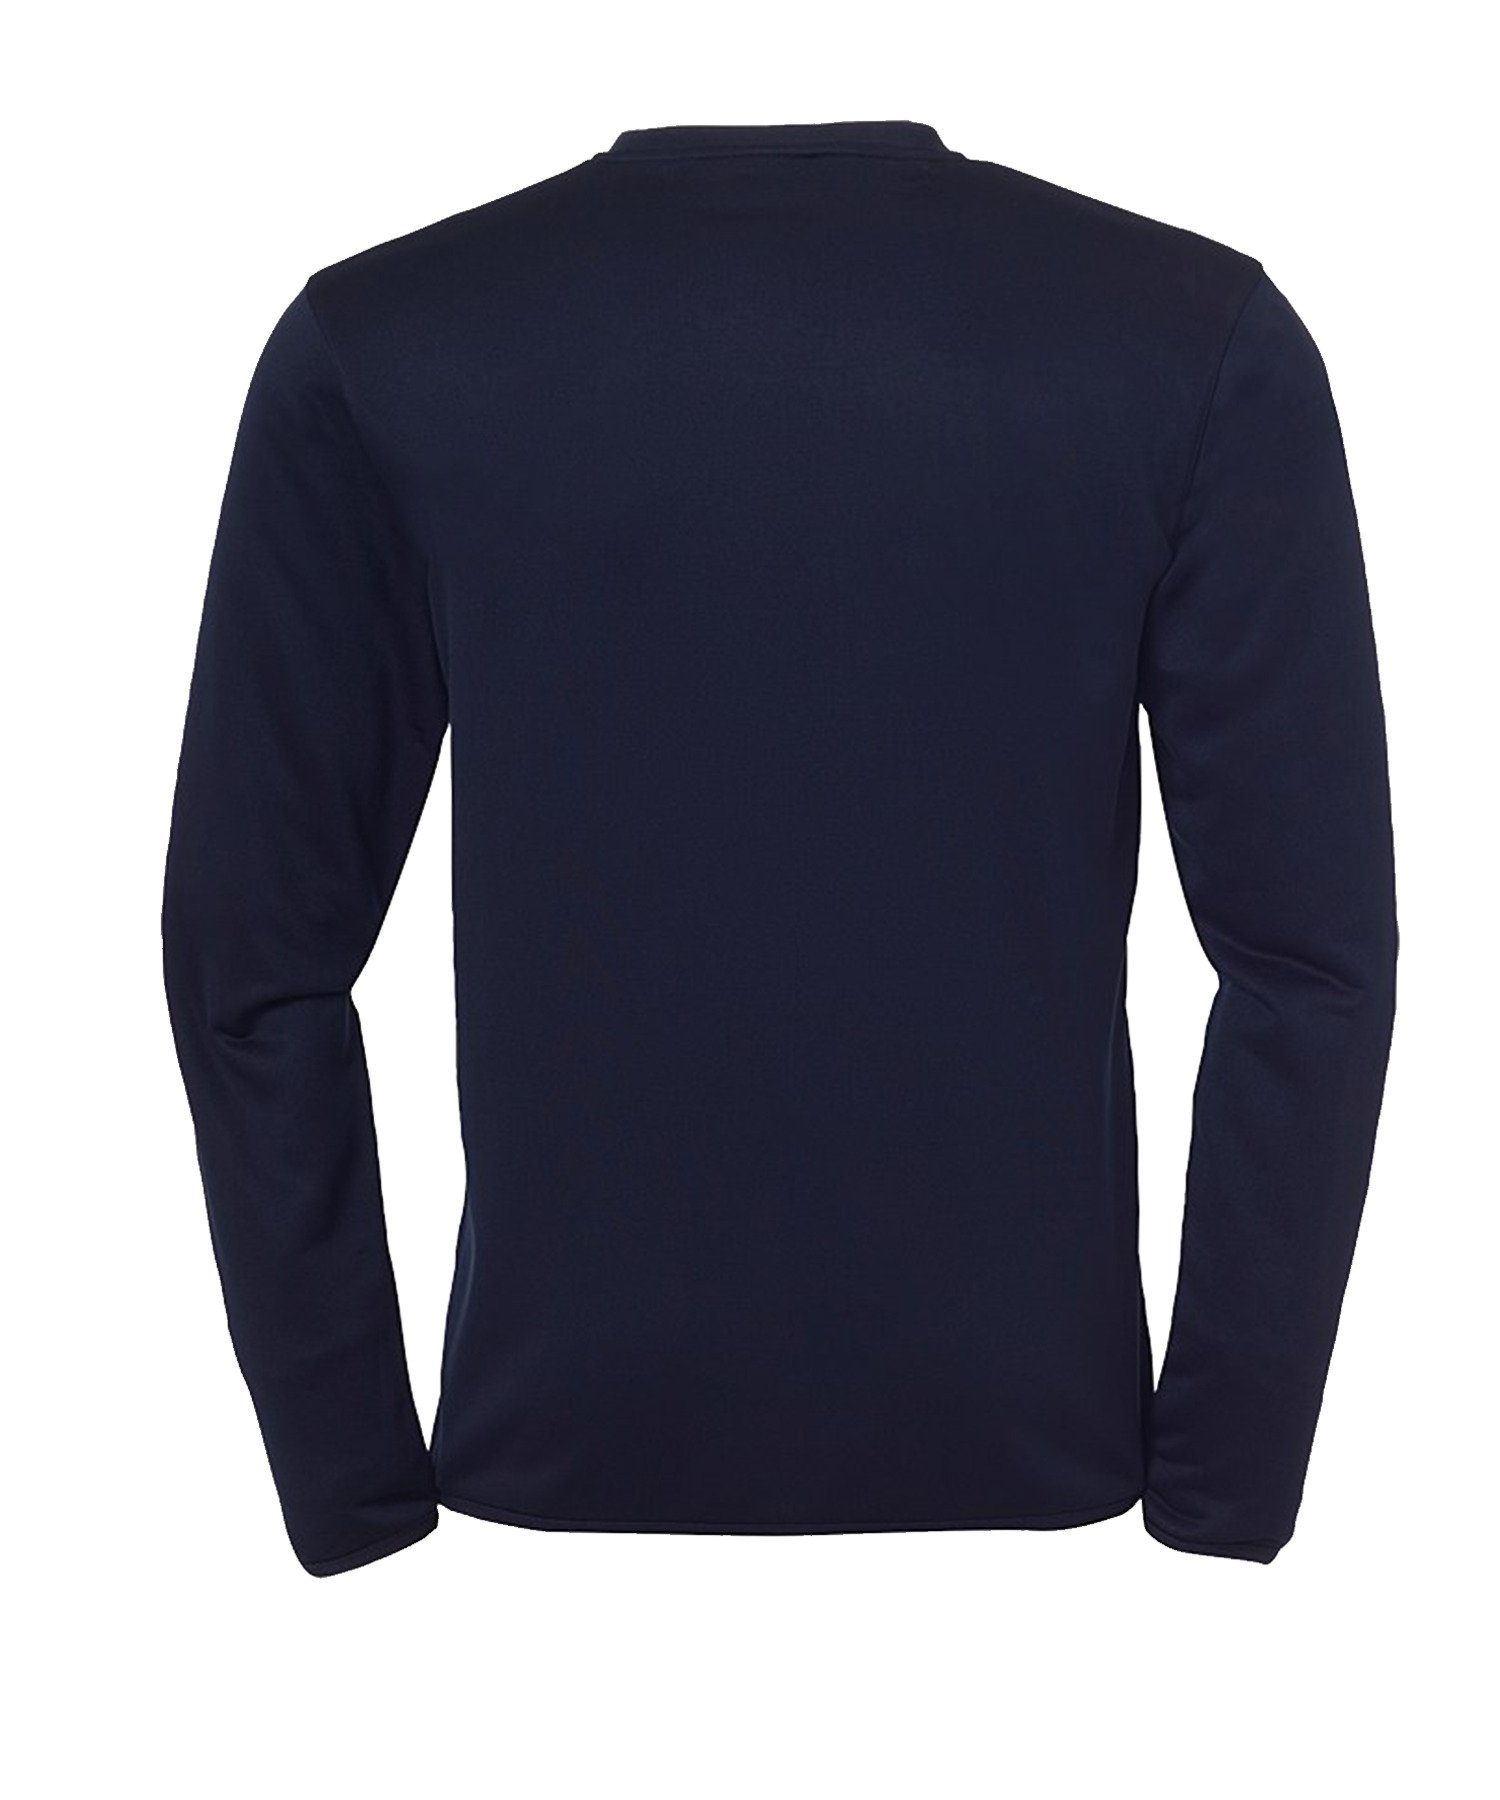 Sweatshirt uhlsport Blau Essential langarm Trainingstop